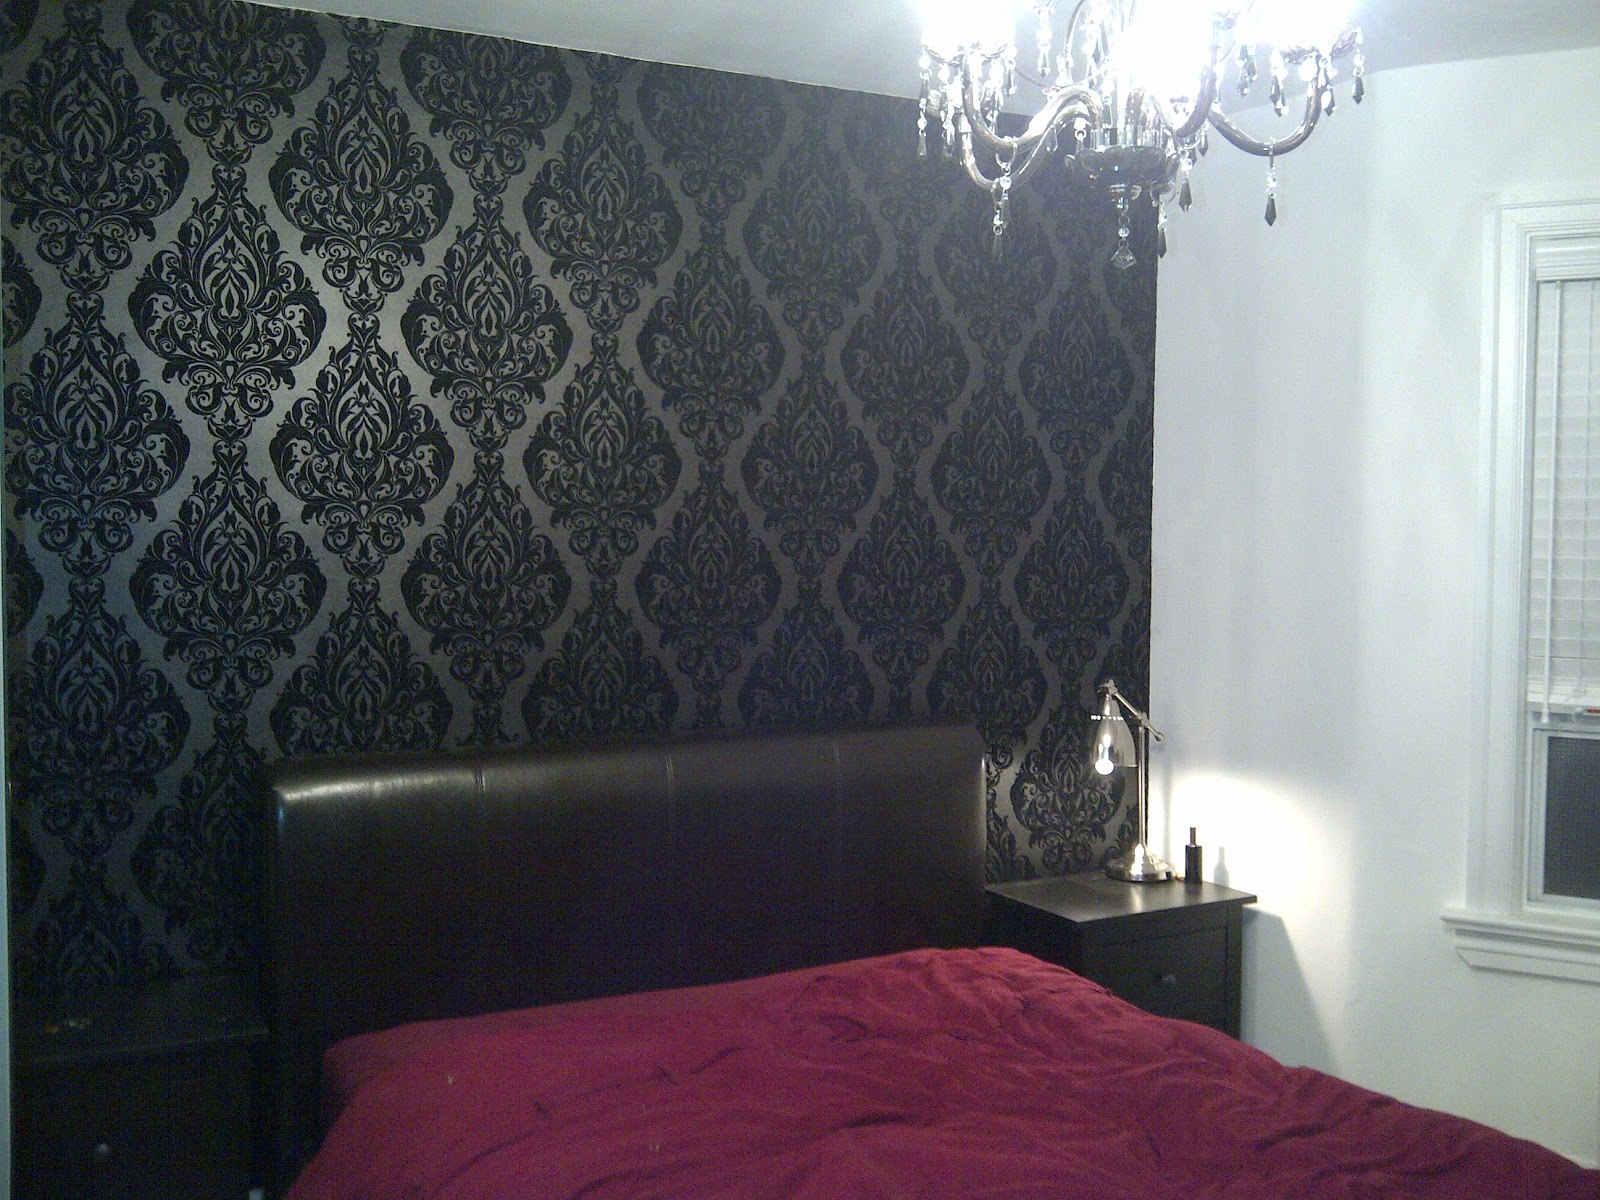 Black Velvet Damask Wallpaper, On Headboard Wall Only - Black Damask Wallpaper Bedroom , HD Wallpaper & Backgrounds